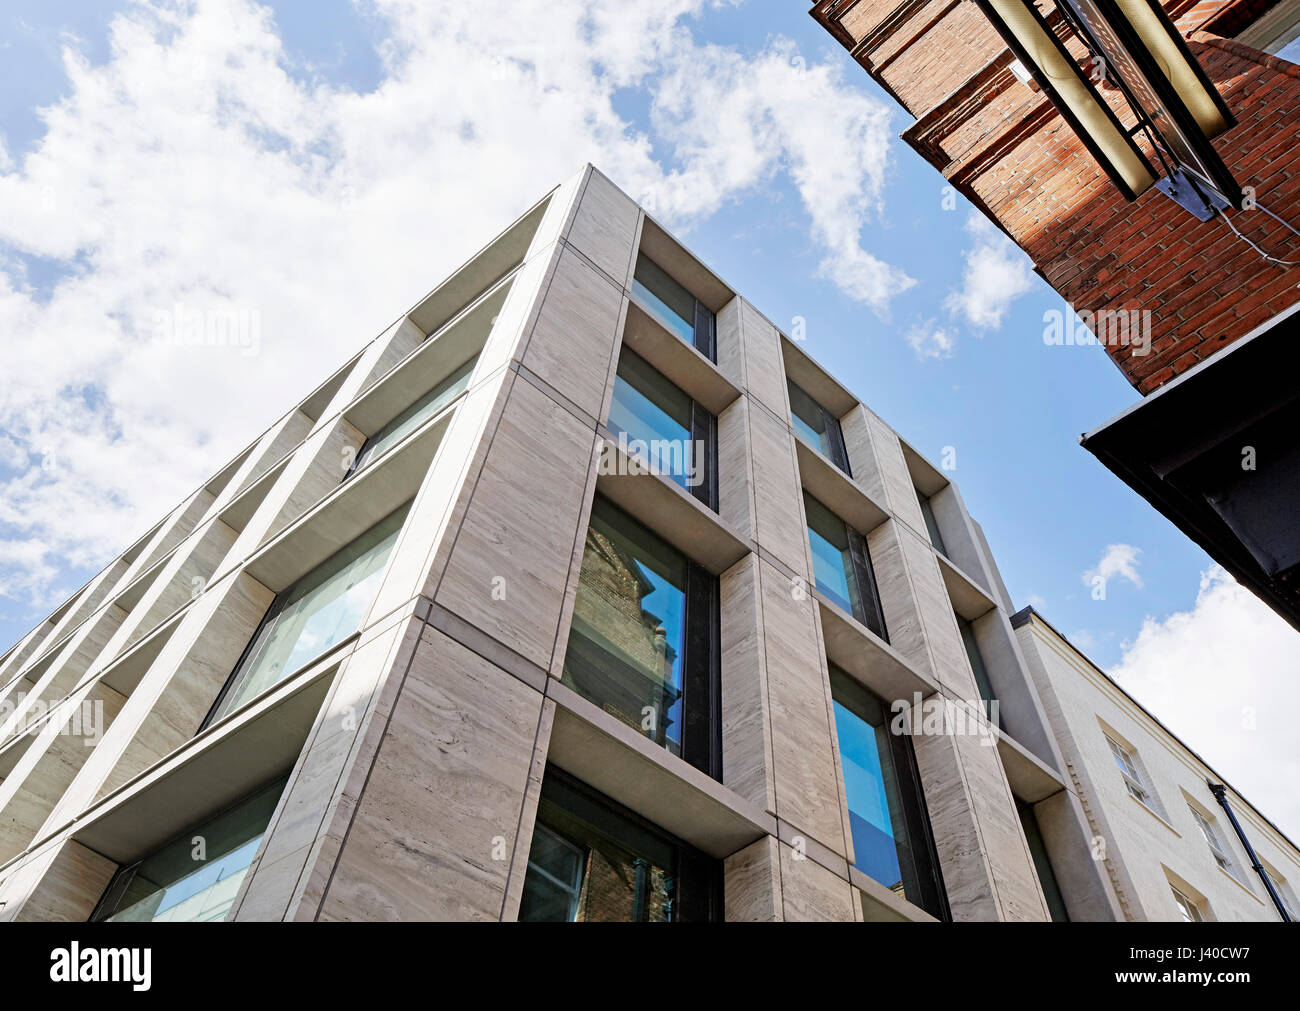 Außenfassaden Ansicht von unten. Chancery Lane, London, Vereinigtes Königreich. Architekt: Bennetts Associates Architects, 2015. Stockfoto